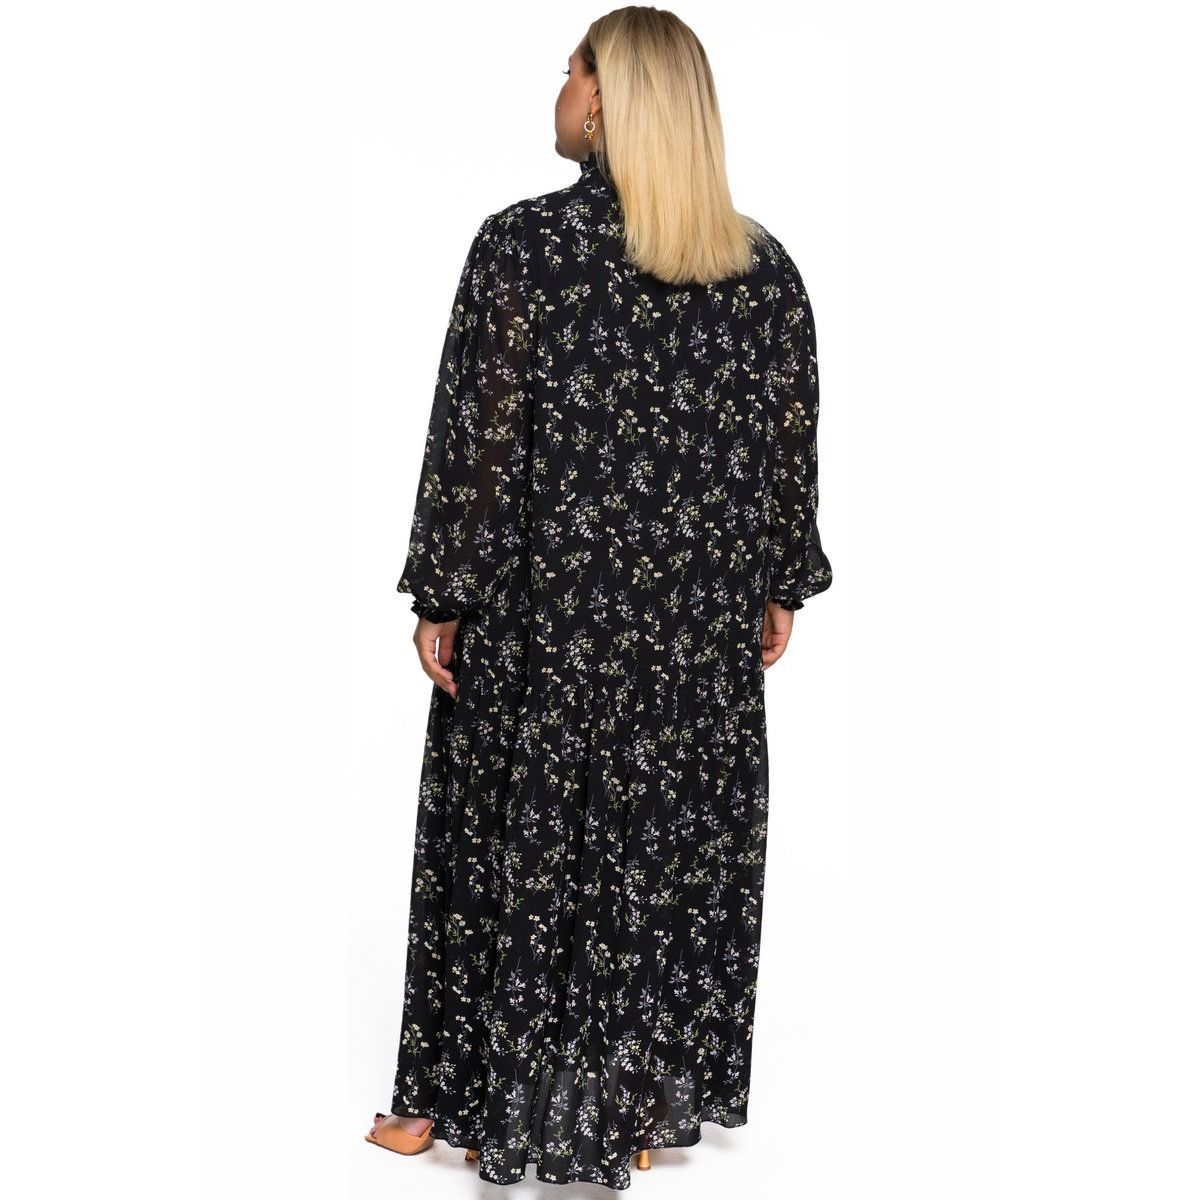 Платье шифоновое, длинное, со стоечкой и рукавом "фонарик", принт цветочный на черном